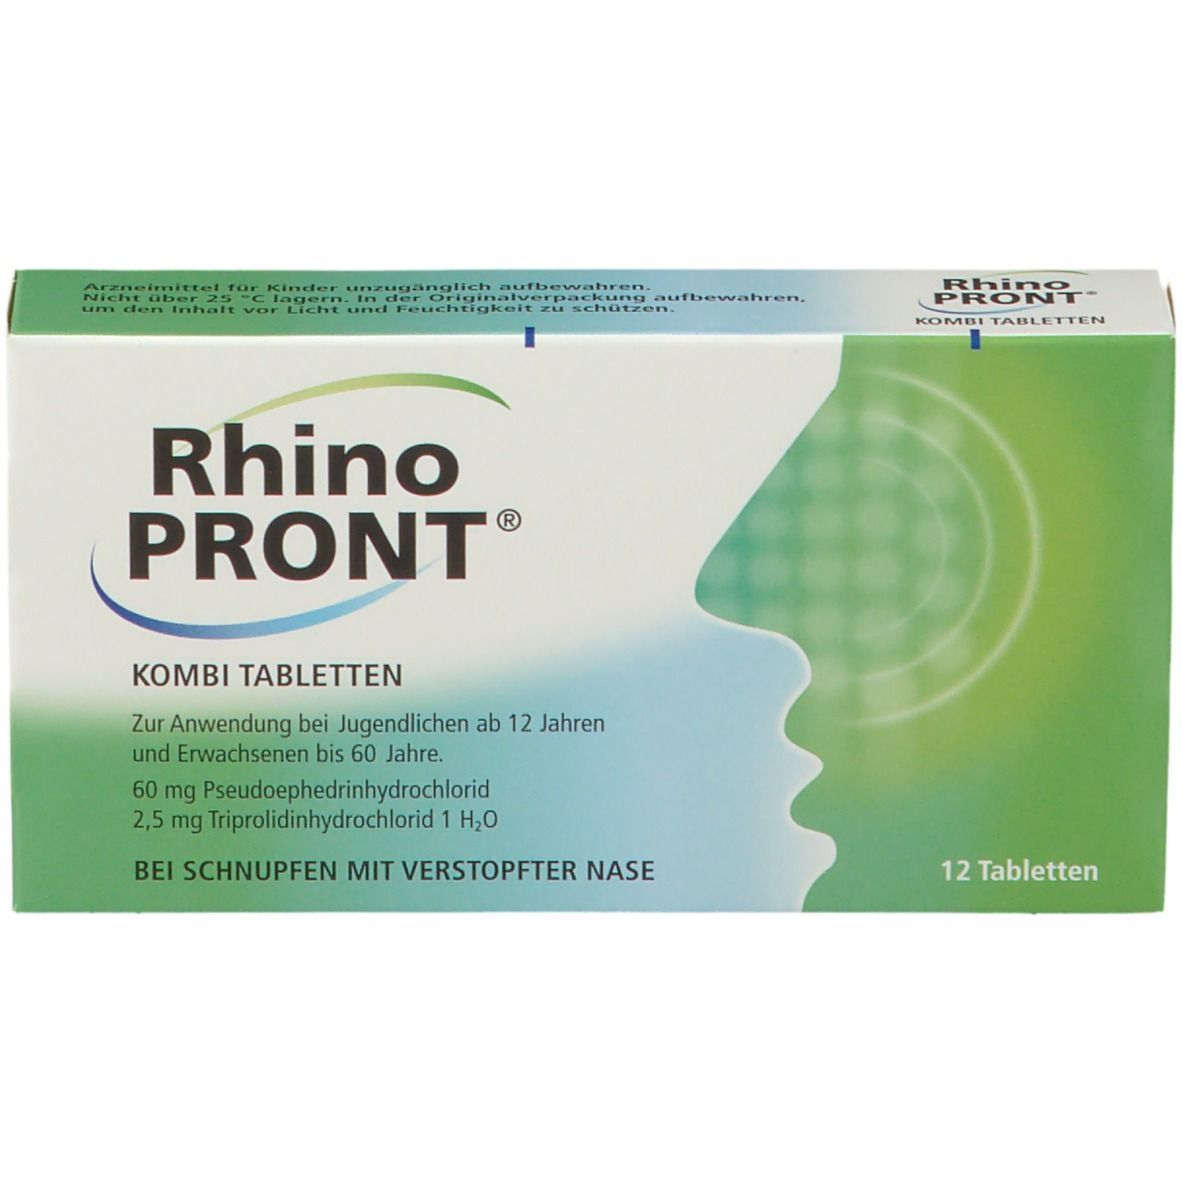 RhinoPRONT® KOMBI TABLETTEN